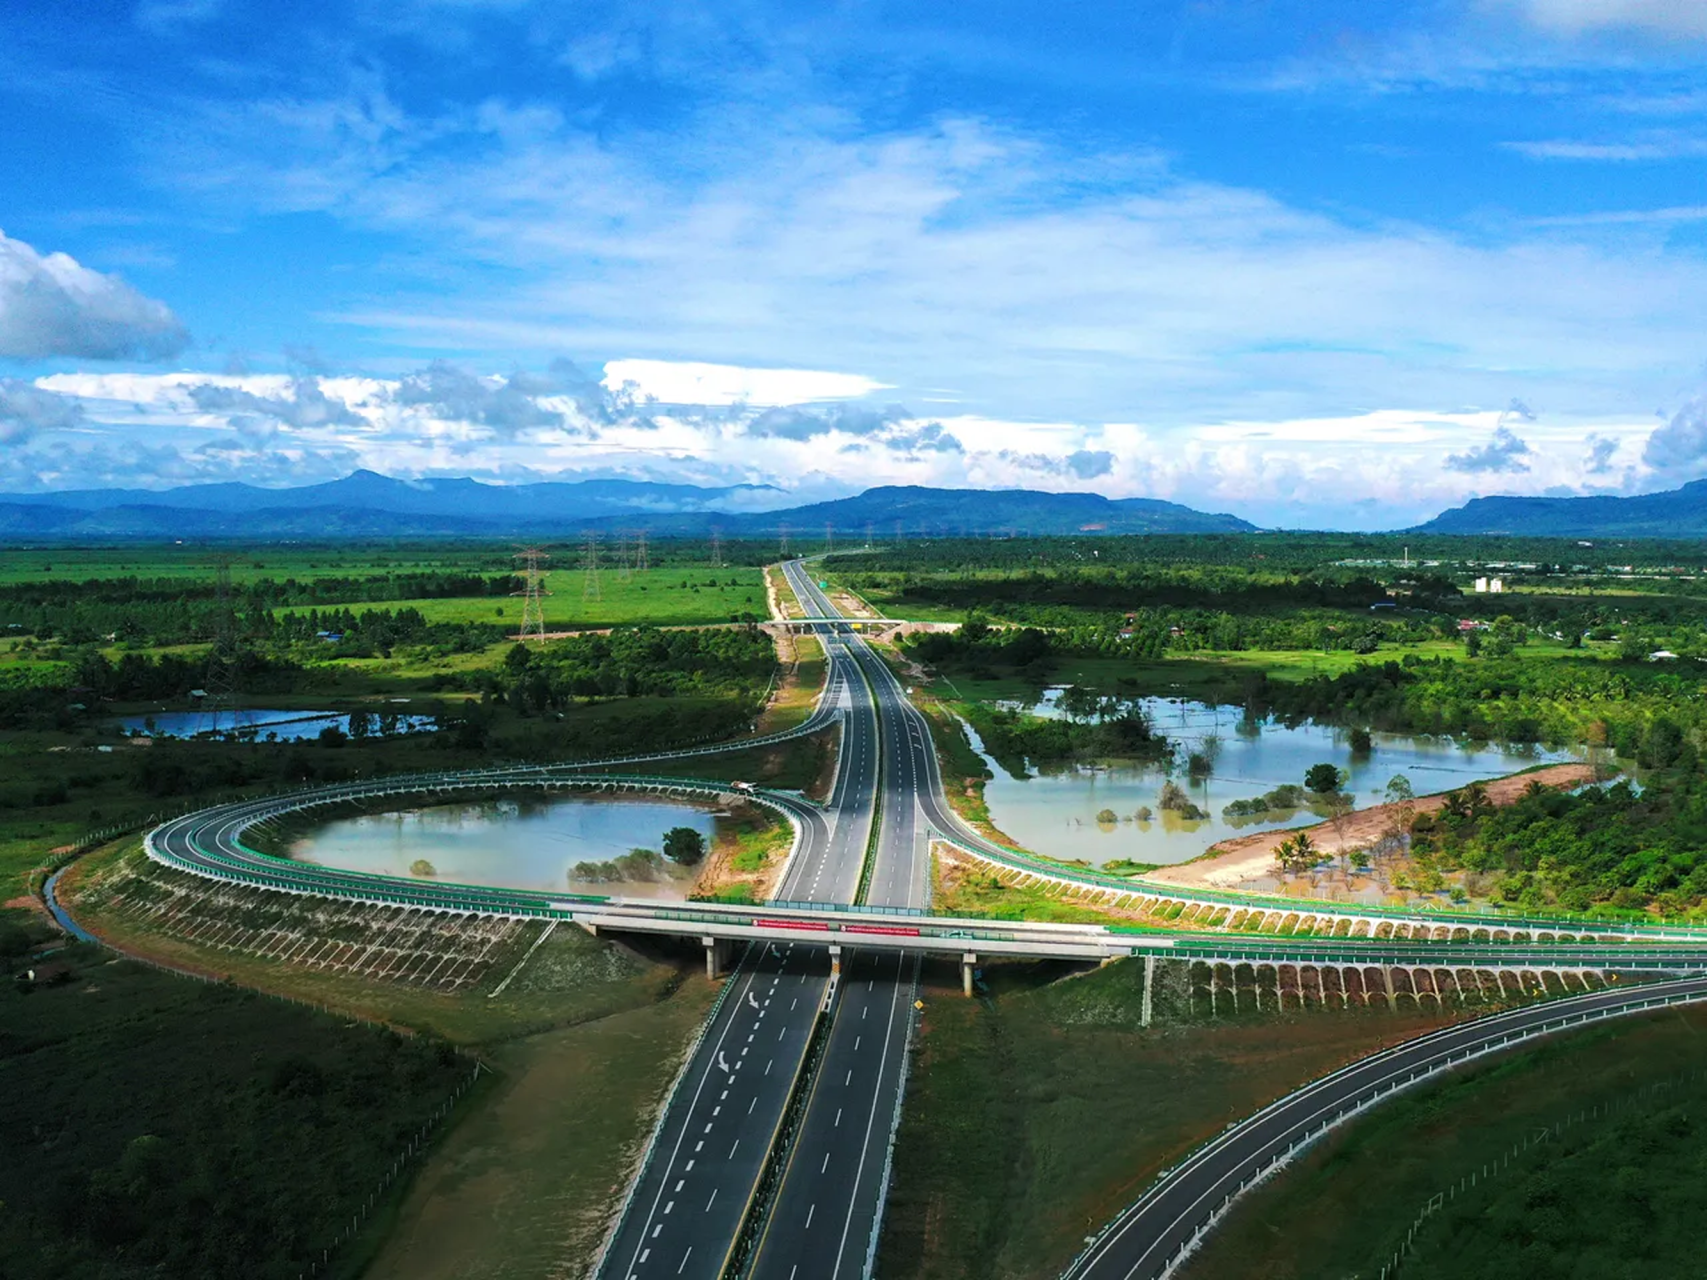 柬埔寨第一条高速公路“金港高速公路”为中国公司建造，连接金边于西哈努克港。